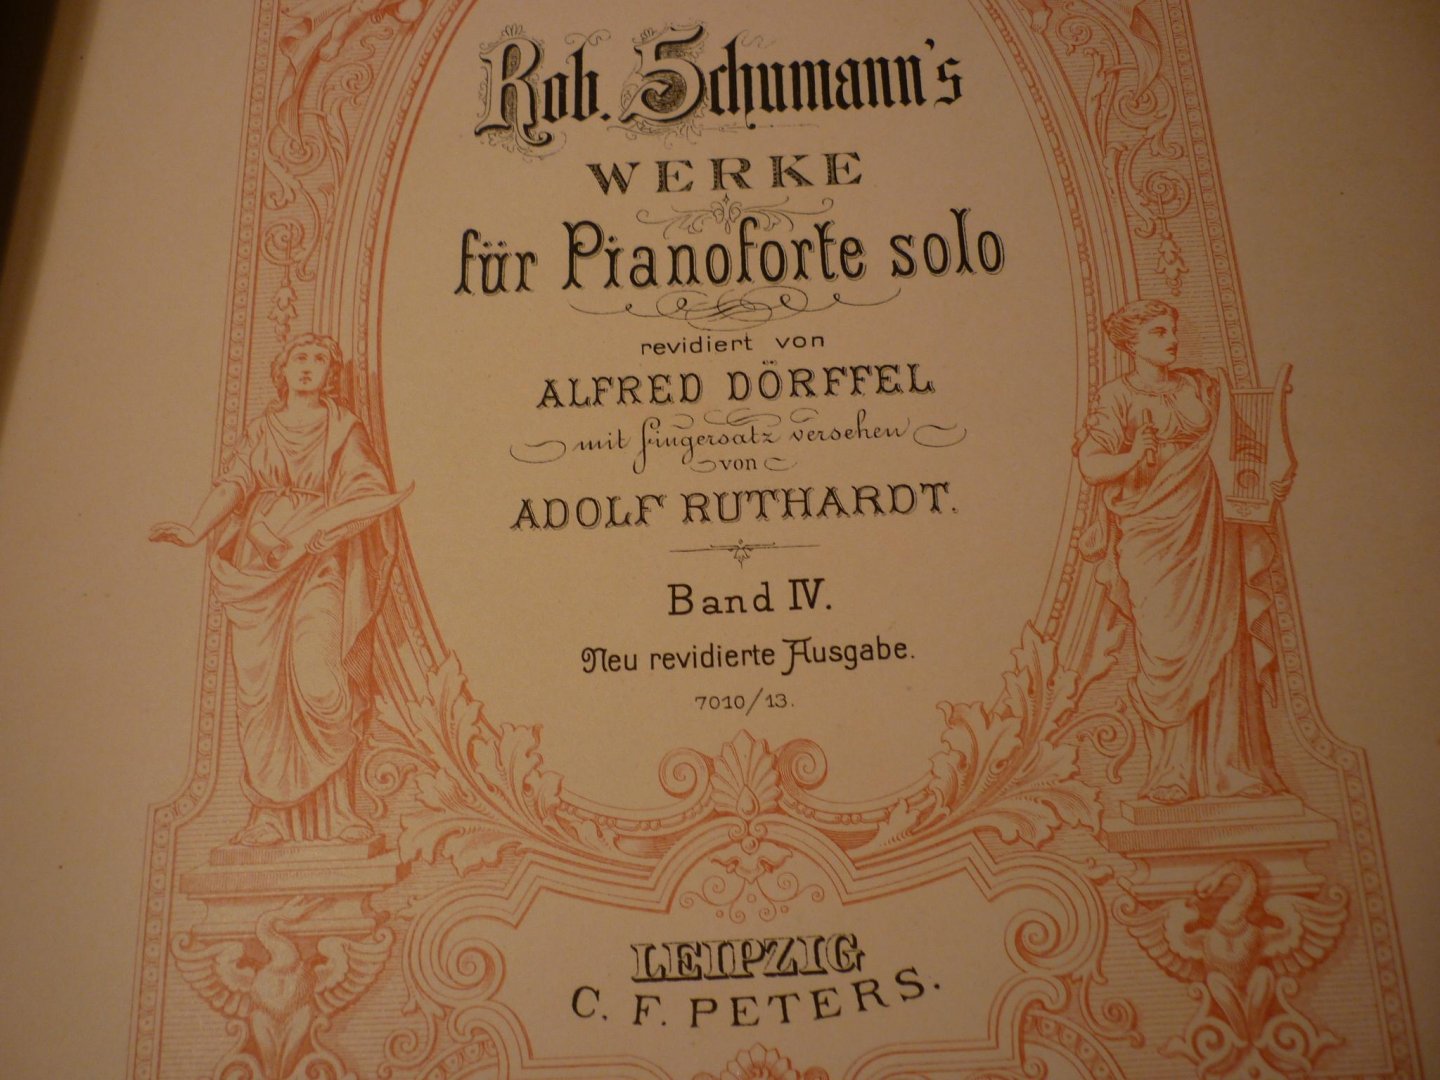 Schumann; Robert (1810-1856) - WERKE fur Pianoforte solo - Band IV; revidiert von Alfred Dorffel mit fingersatz versehen von Adolf Ruthardt